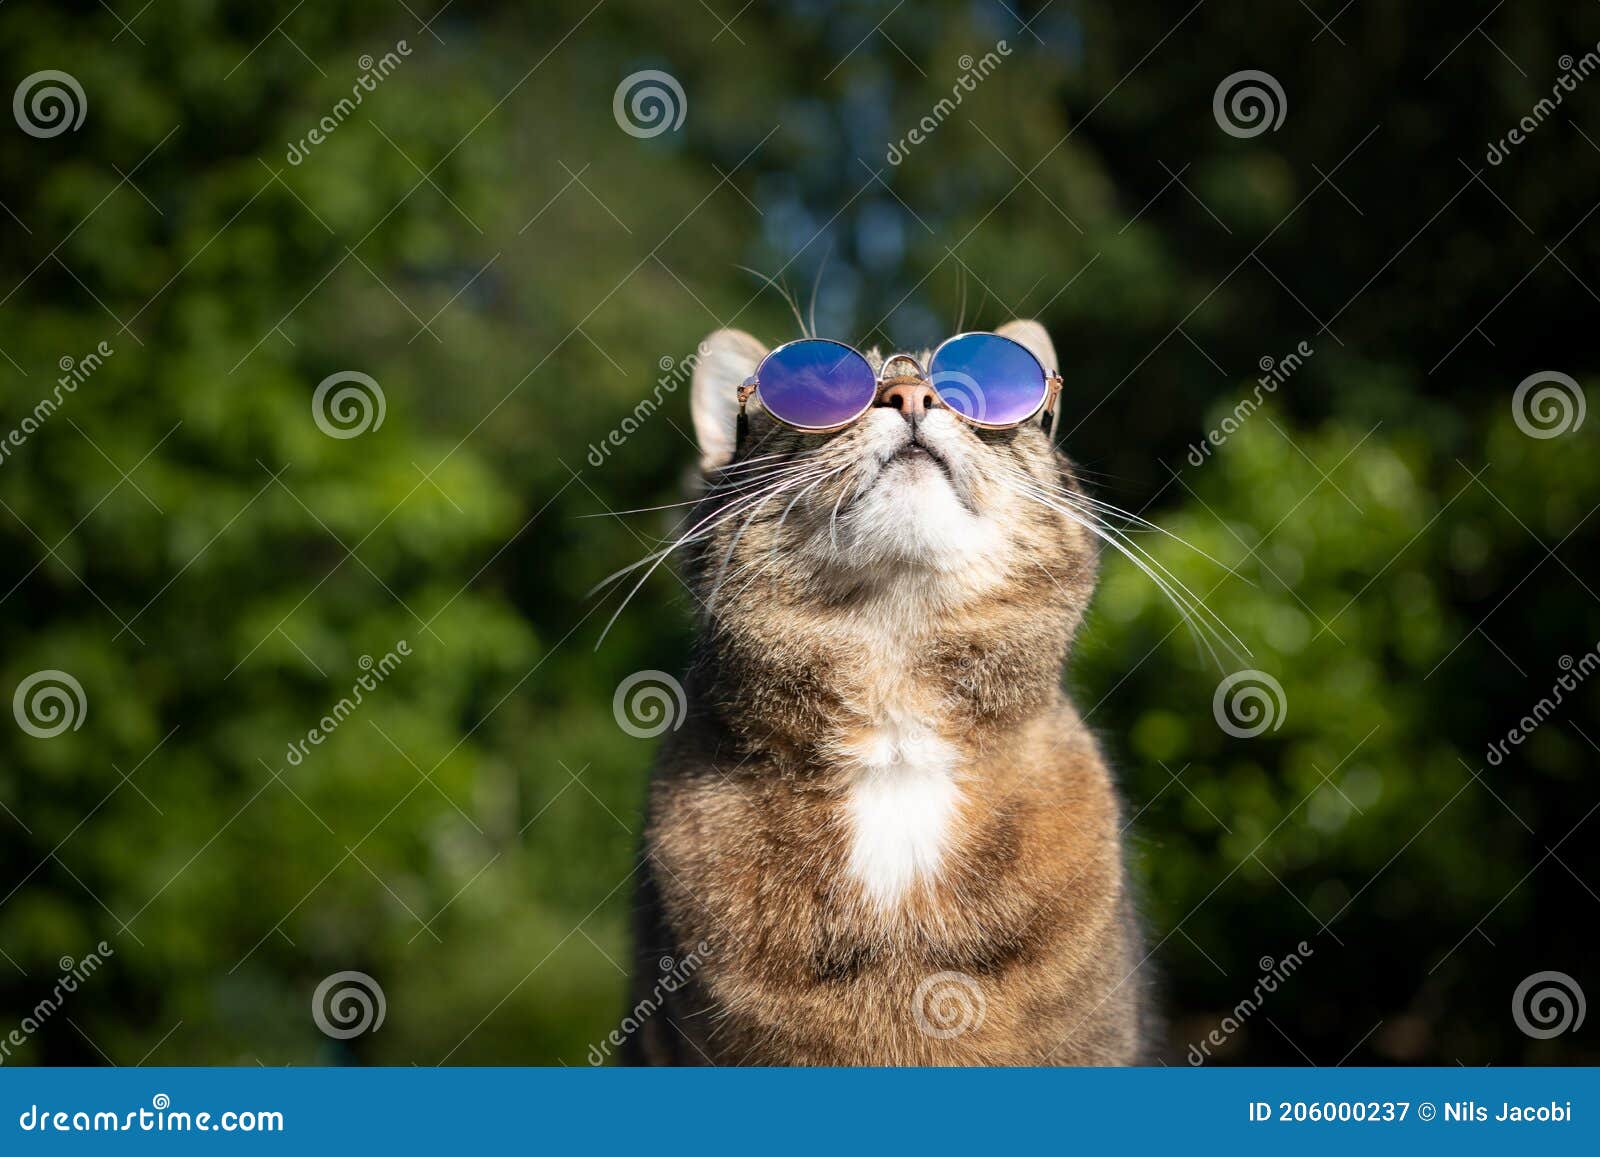 猫戴墨镜非常酷图片,猫咪戴墨镜动图,带墨镜的帅气猫图片_大山谷图库